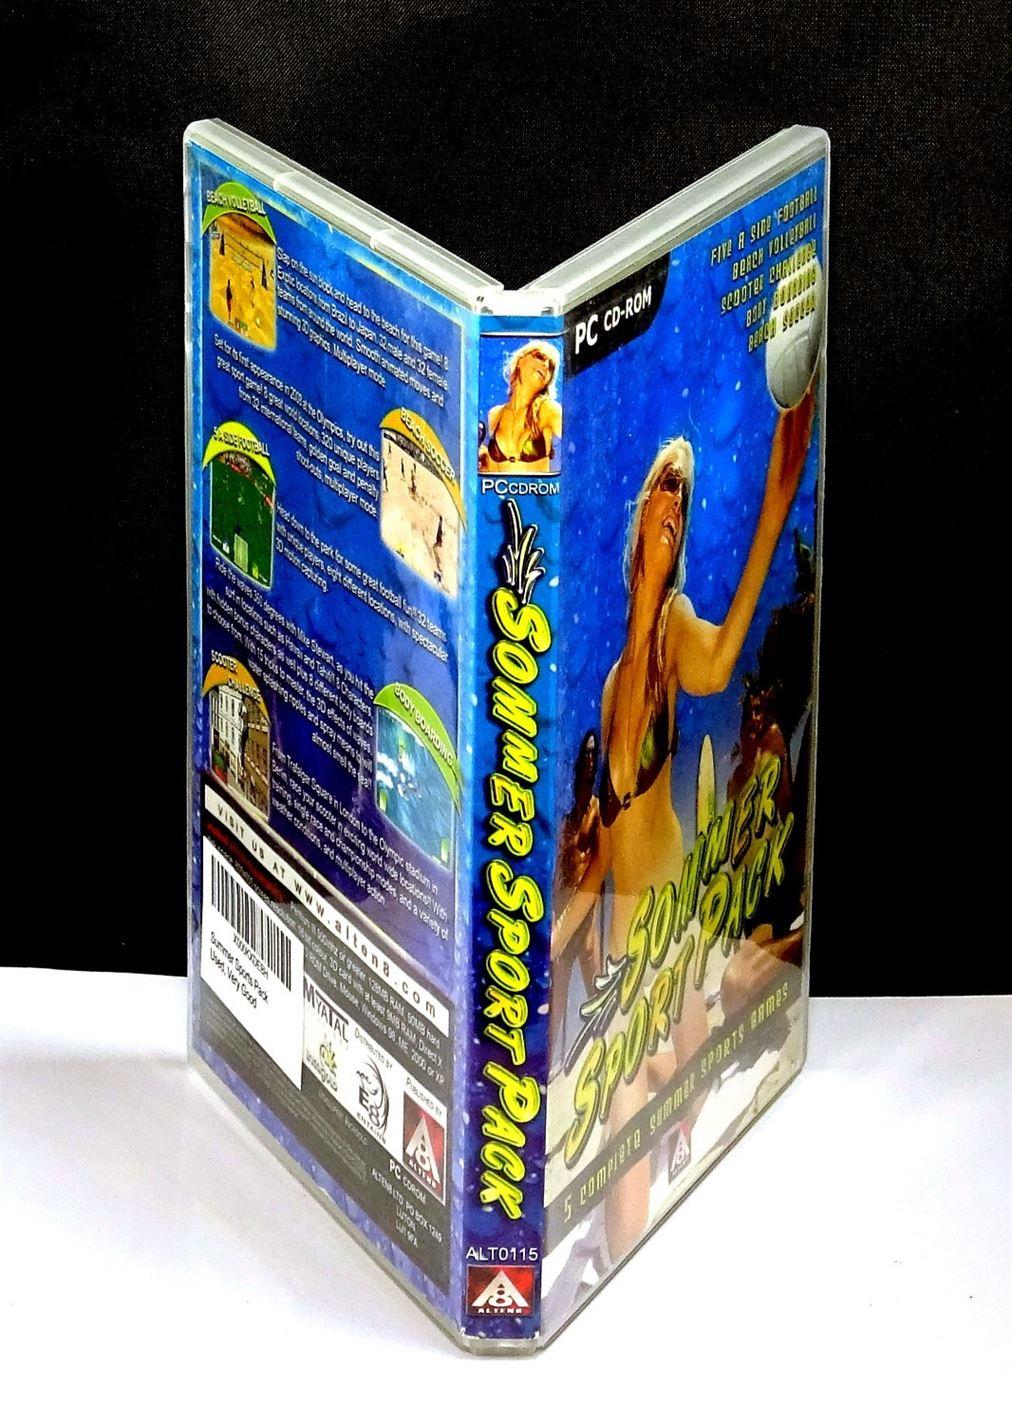 Sommer Sports Pack (PC) - UK Seller